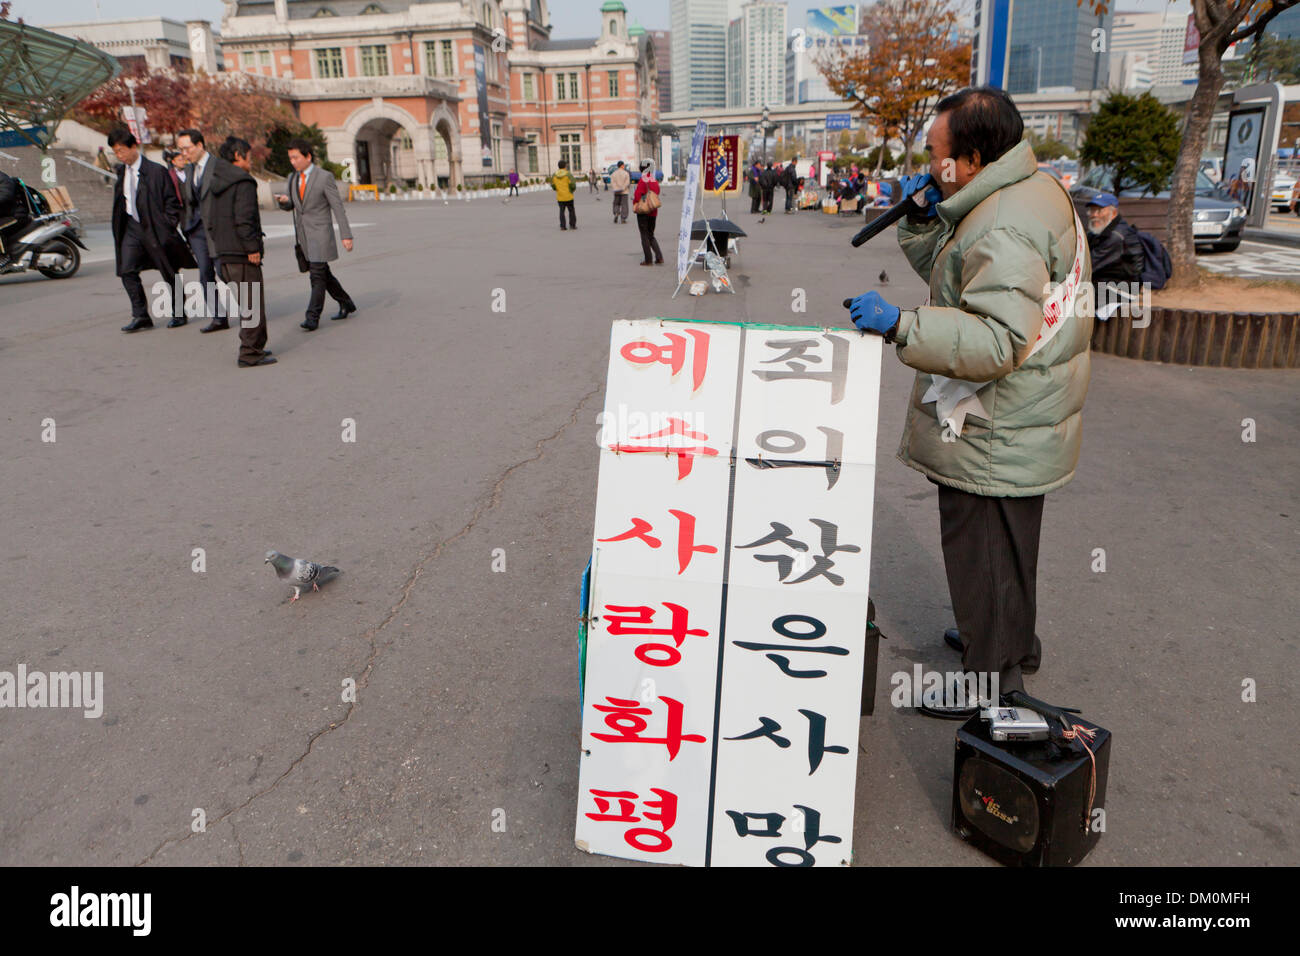 Straße Evangelisten - Seoul, Südkorea - Schild steht: Liebe zu Jesus bringt Frieden, der Sünde Lohn ist der Tod Stockfoto